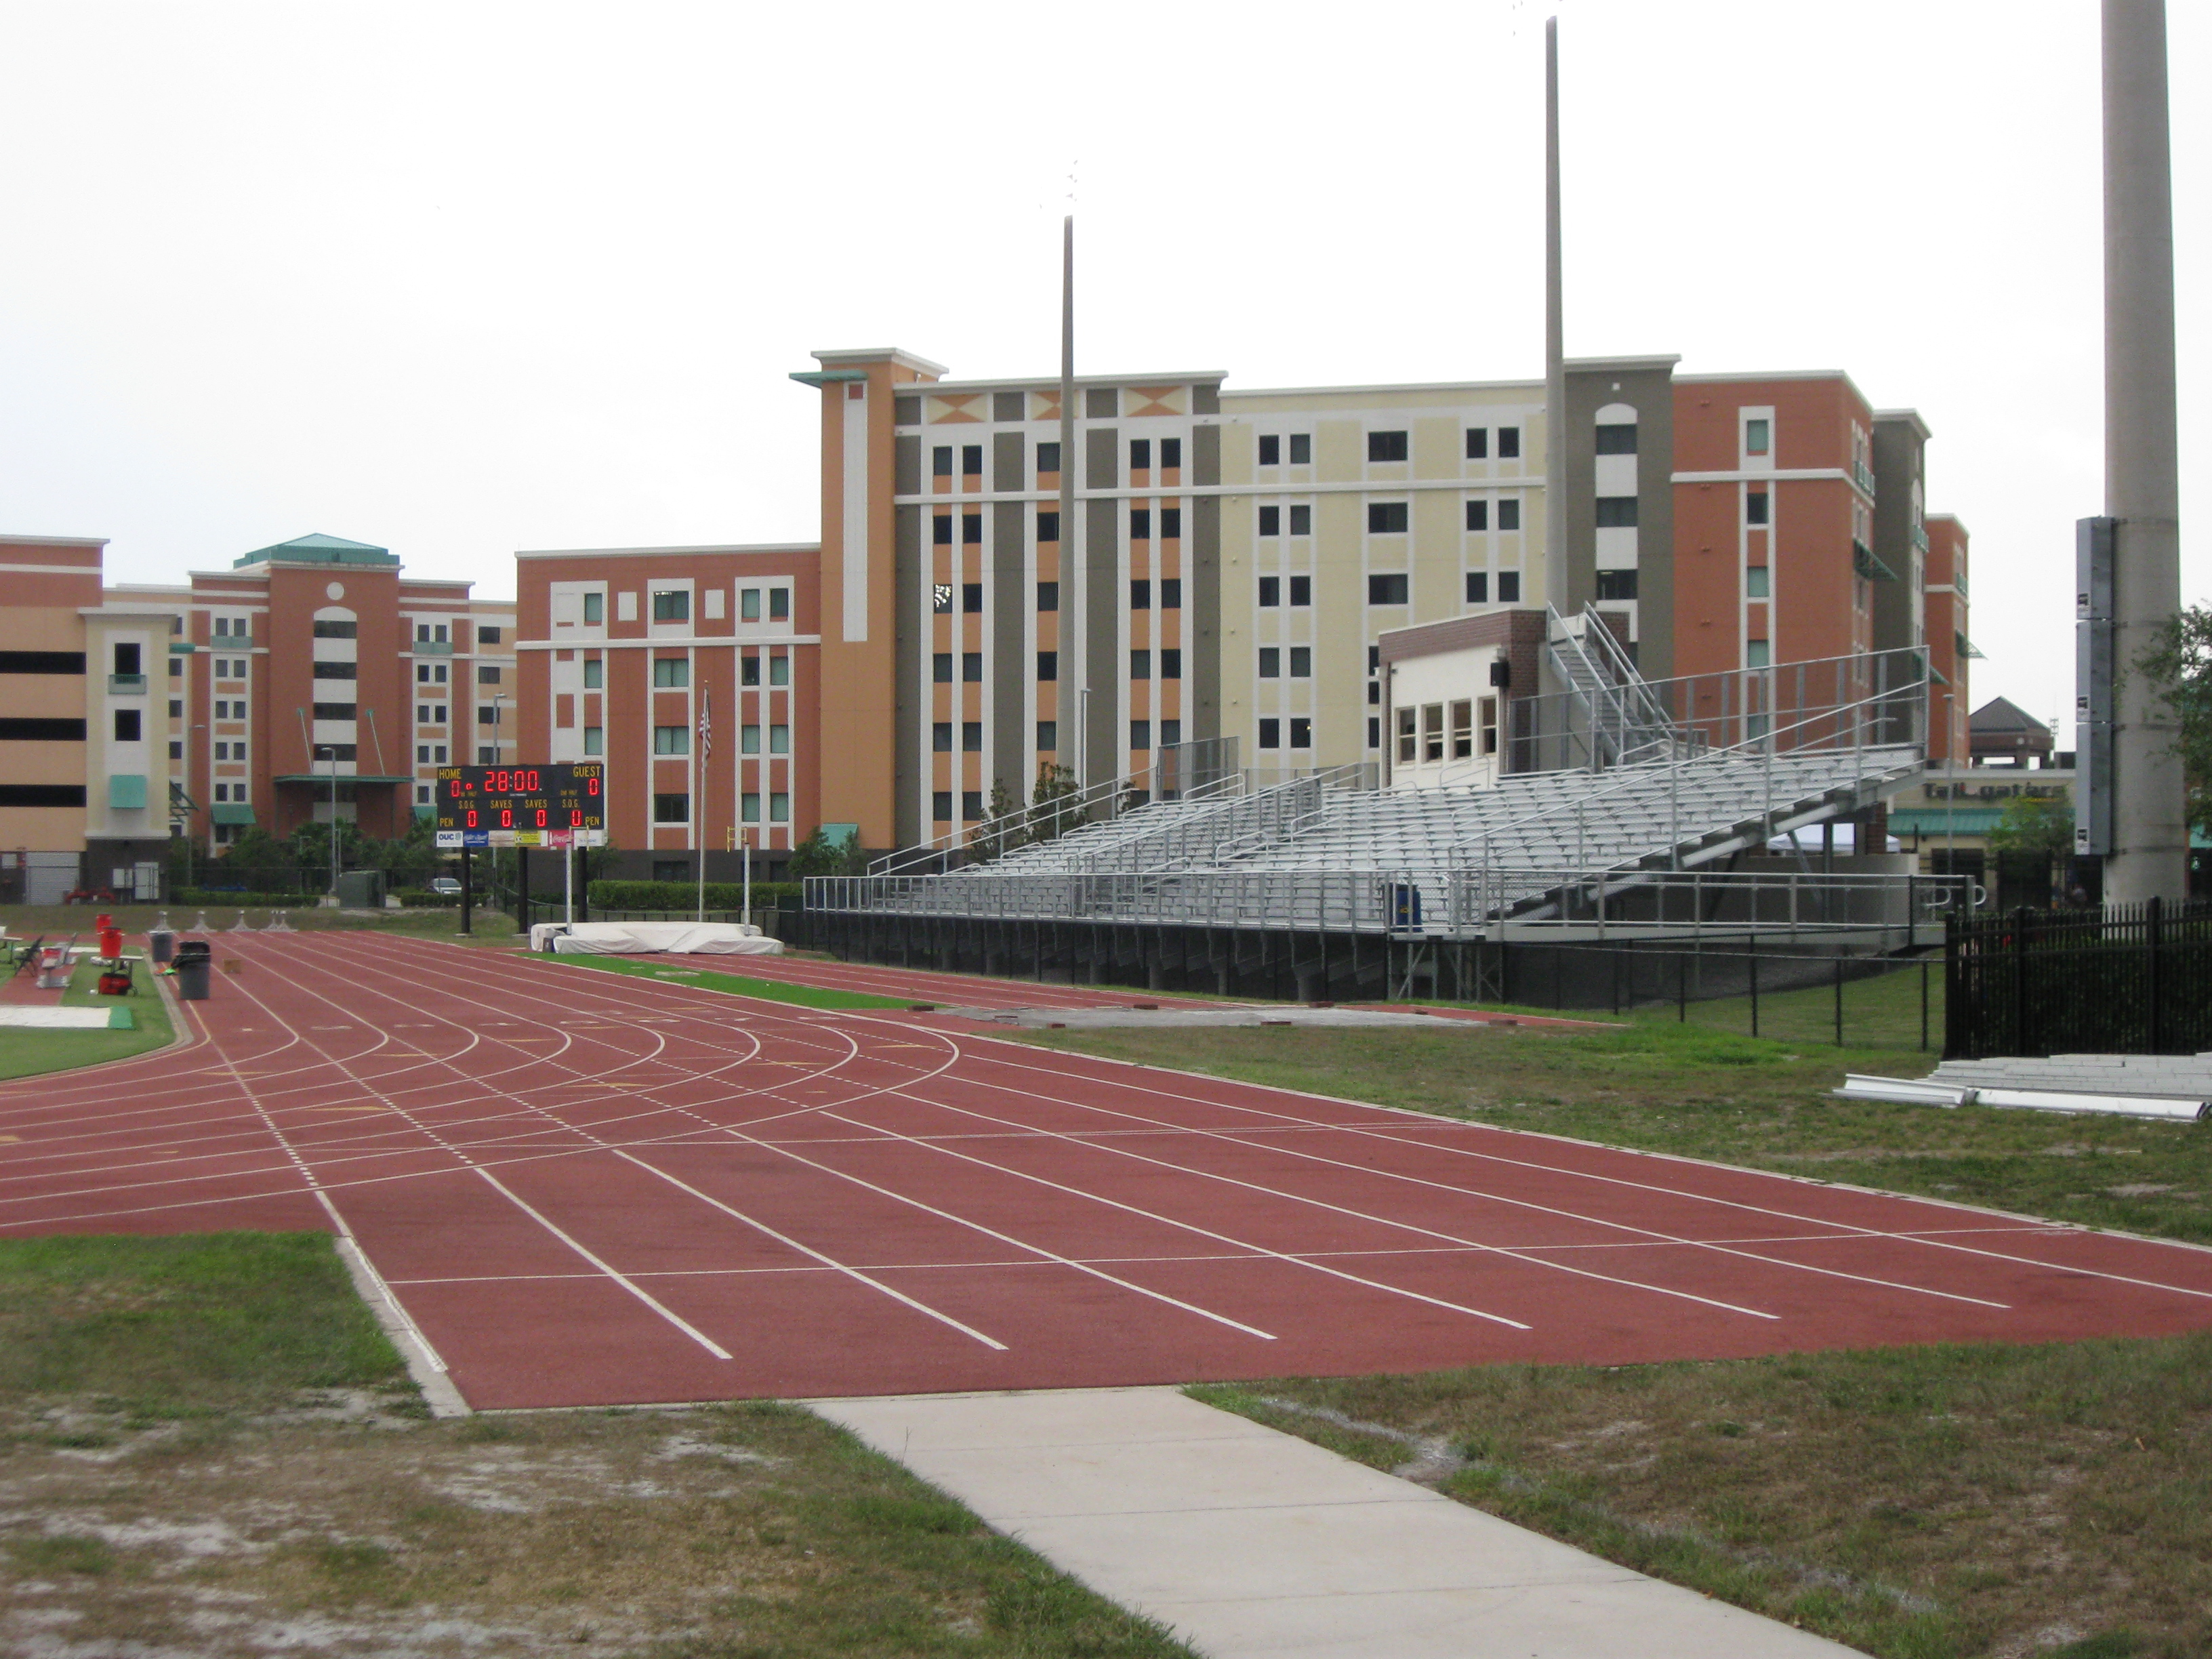 Track Stadium